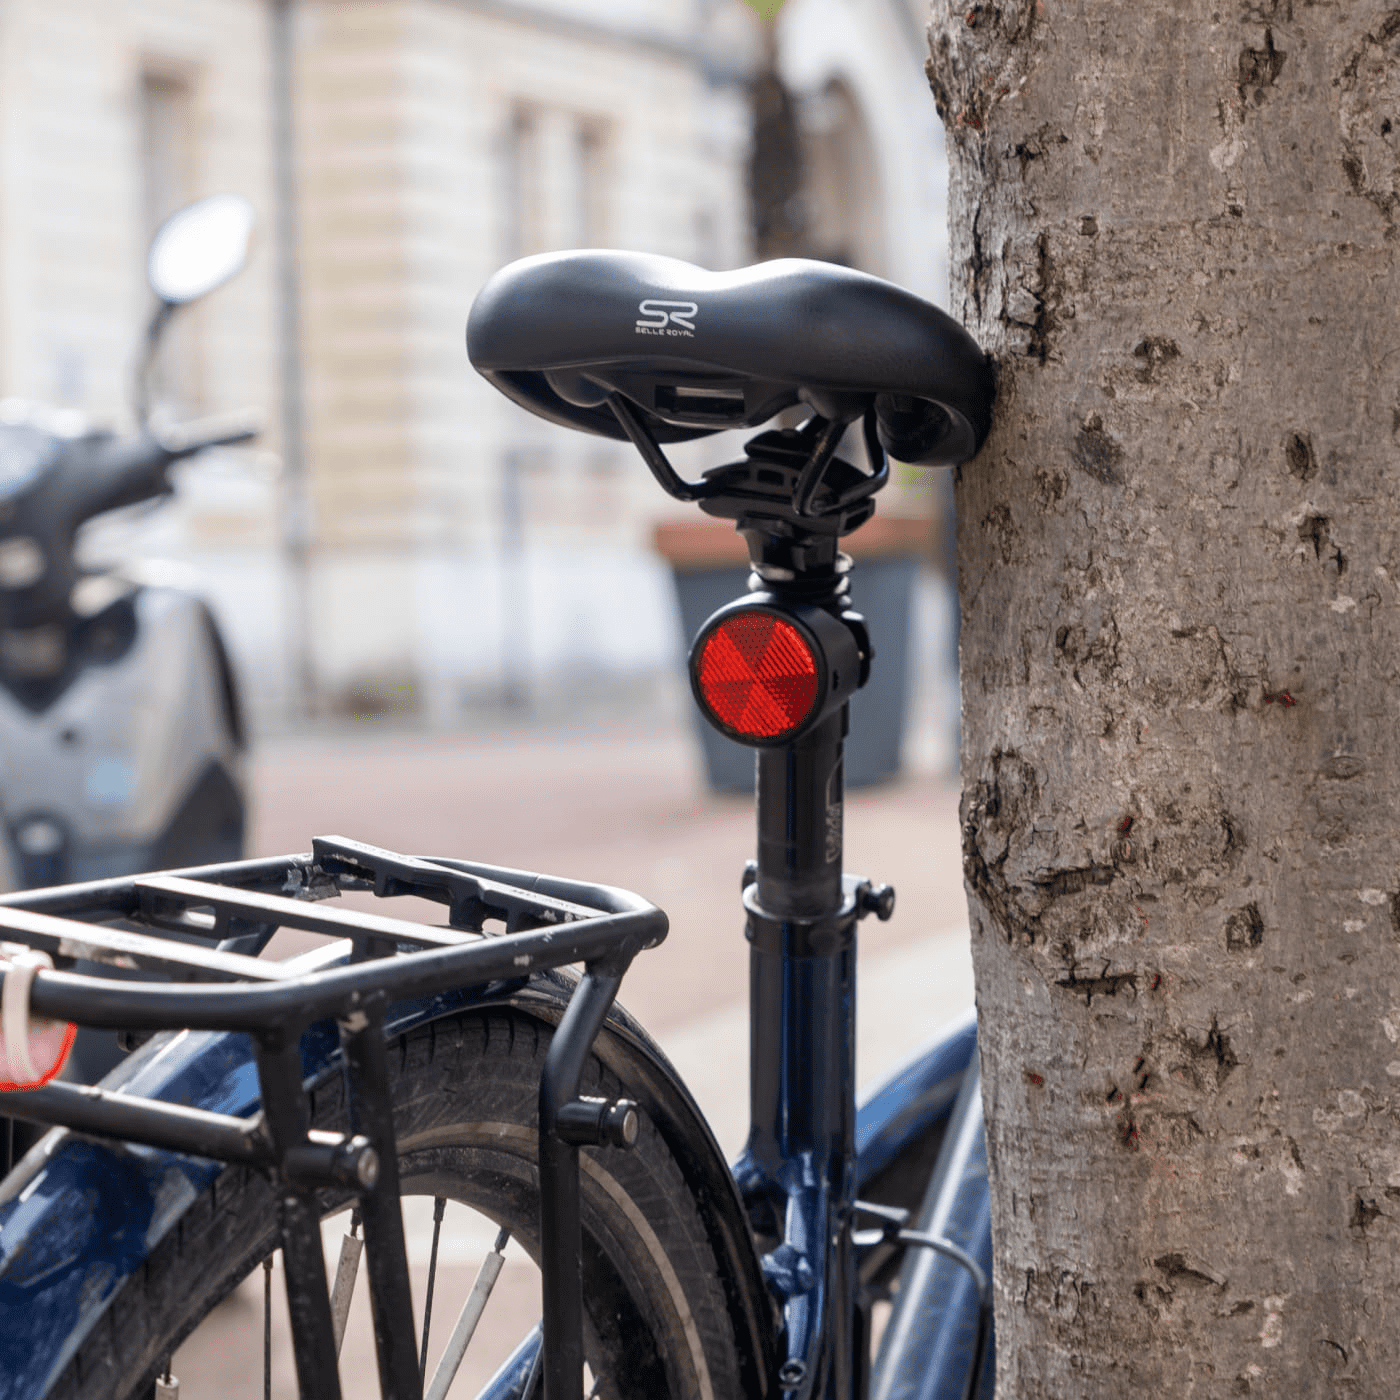 Tracker GPS pour vélo et vélo électrique - Invoxia